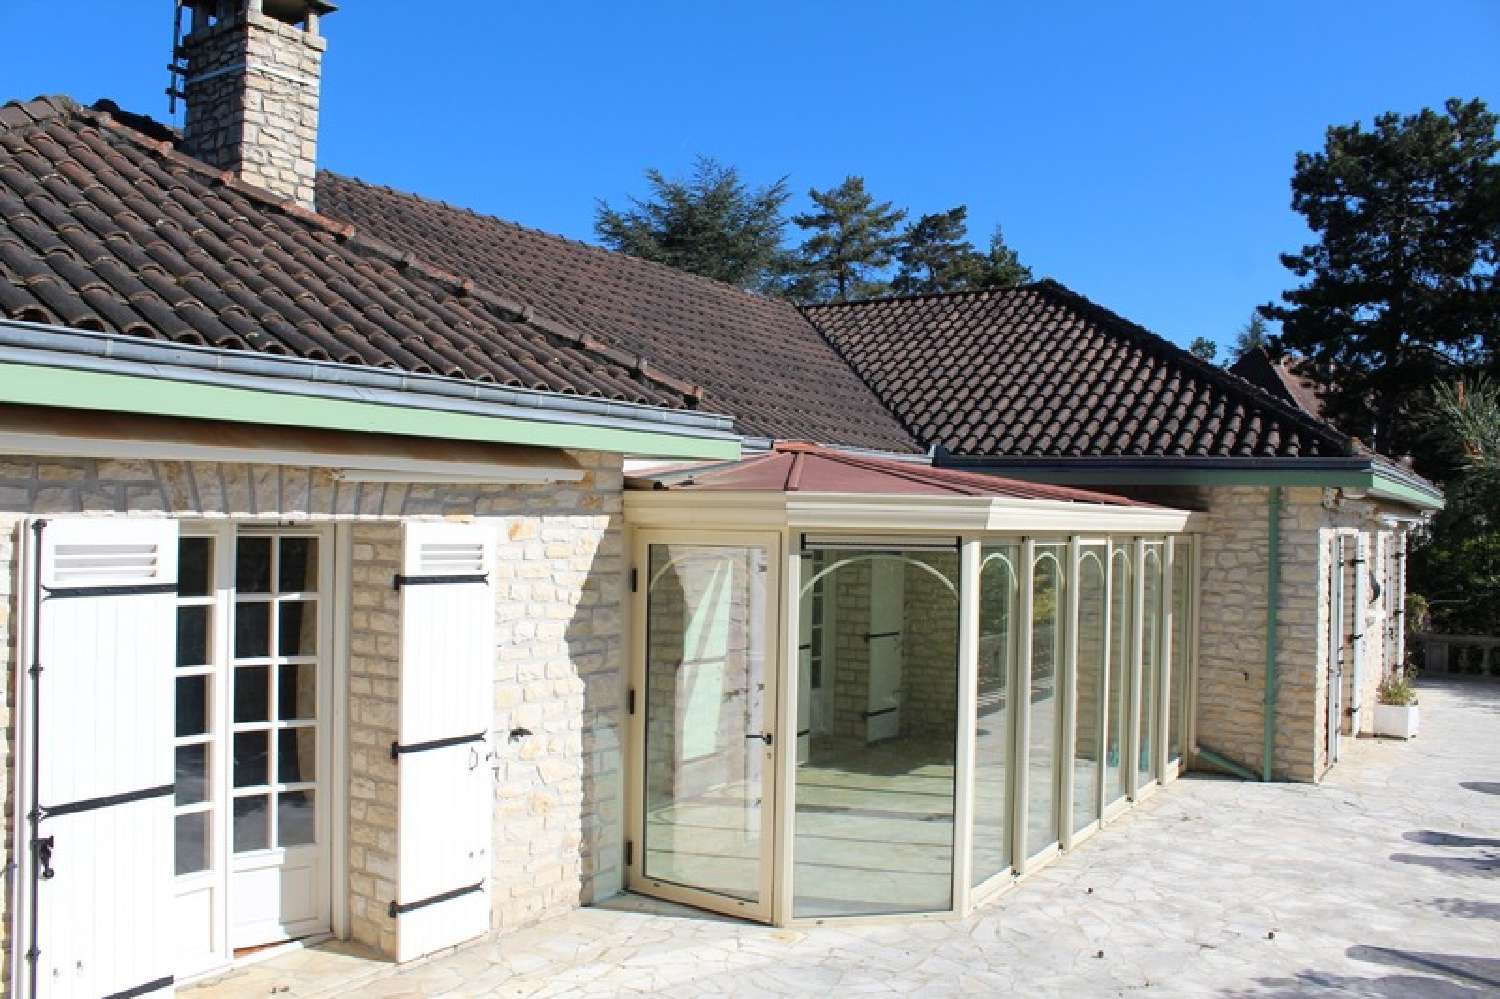  à vendre maison Trélissac Dordogne 3